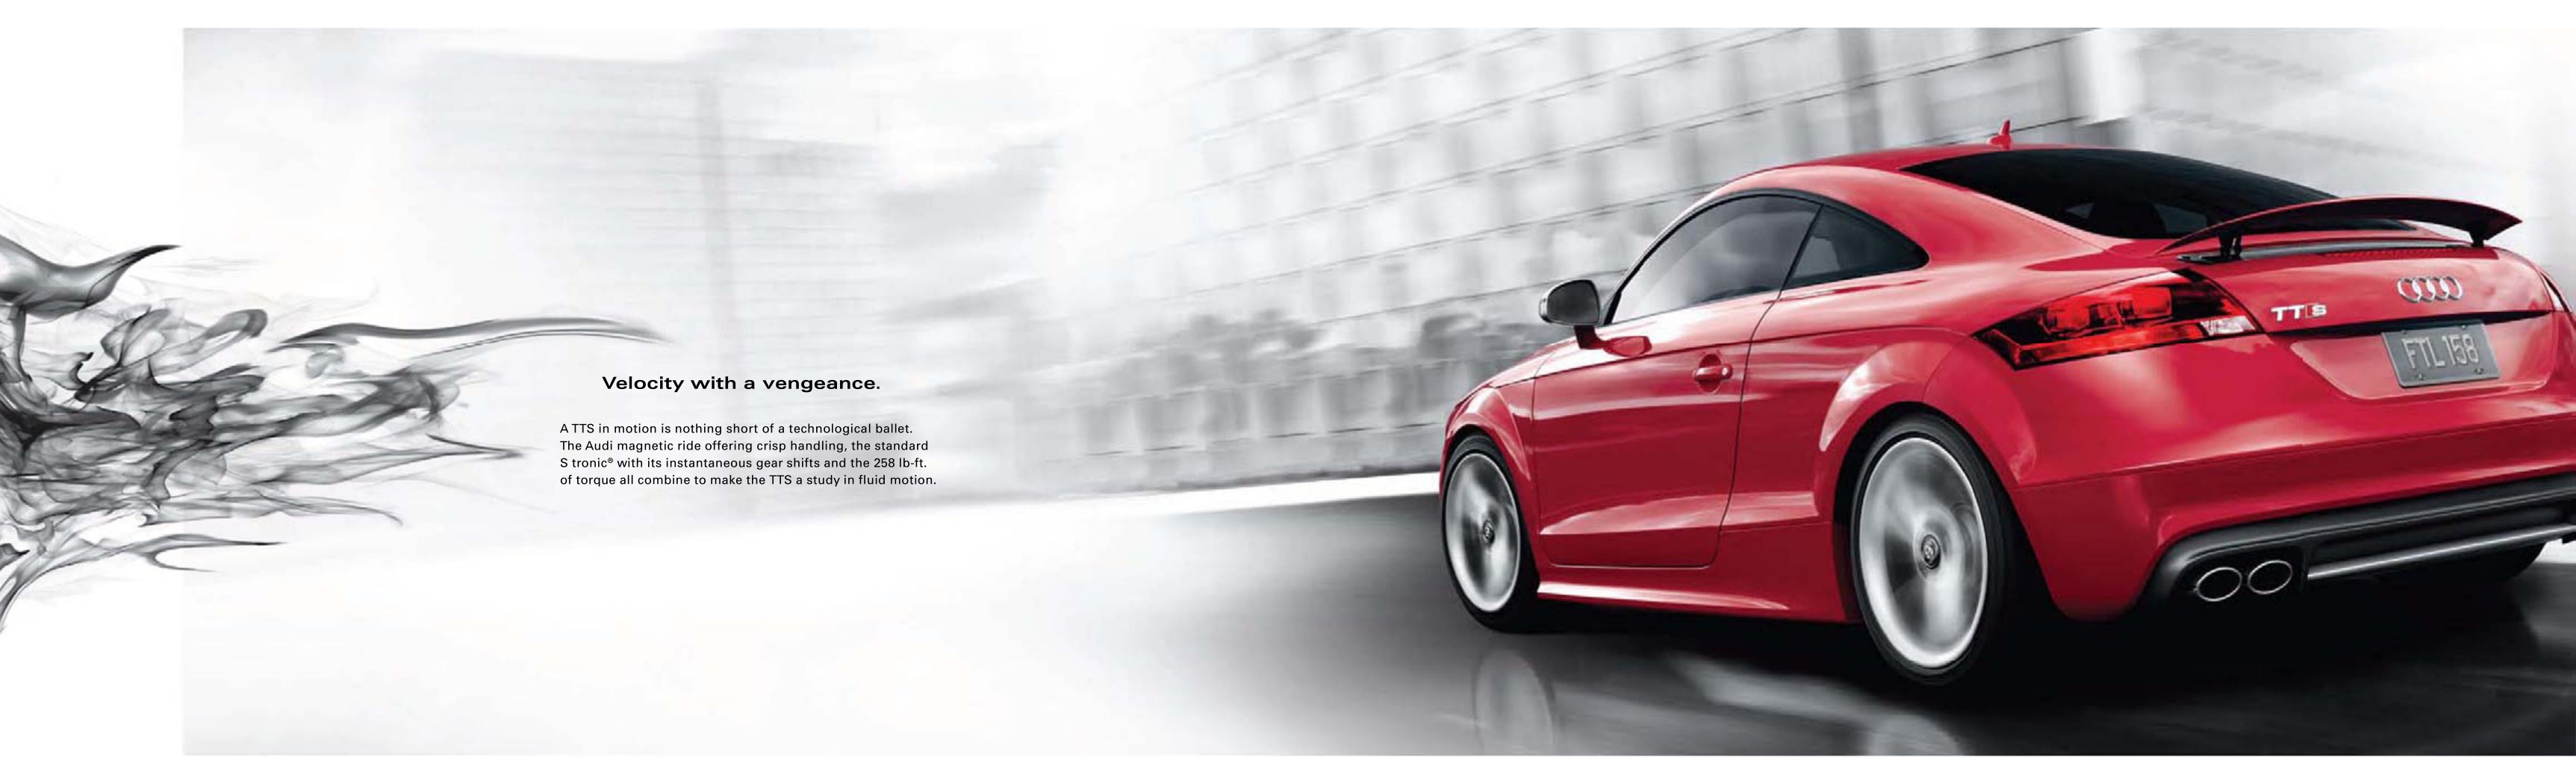 2009 Audi TT Brochure Page 8